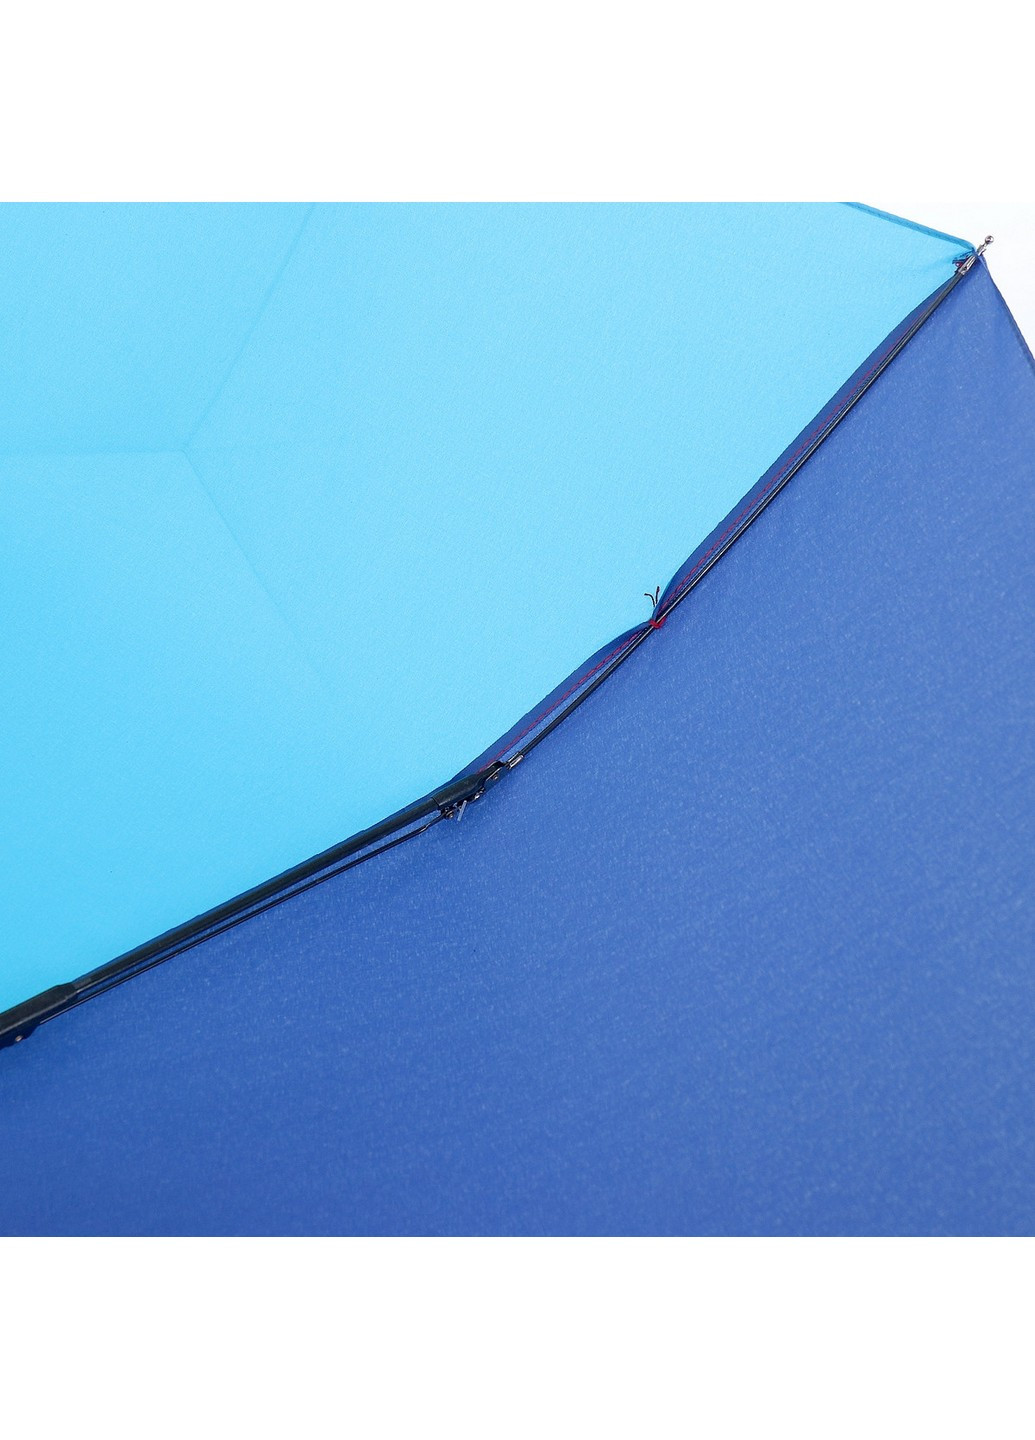 Зонт женский полуавтомат 97 см ArtRain (255375680)